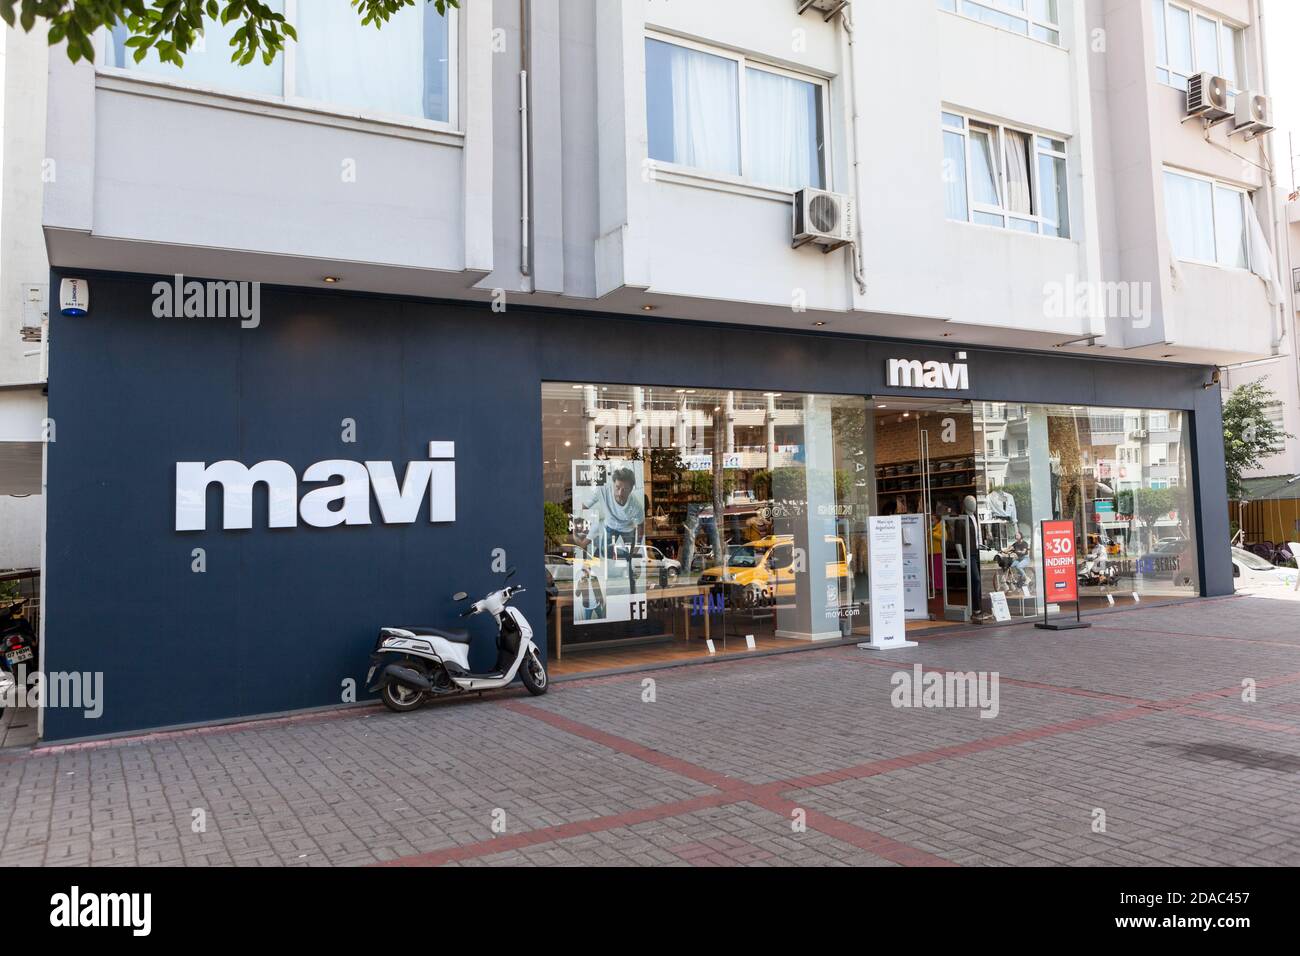 Der Mavi Shop befindet sich im Zentrum von Alanya. Es ist eine türkische  Marke von Denim und Jeans-Wear mit Sitz in Istanbul. Alanya, Türkei  Stockfotografie - Alamy